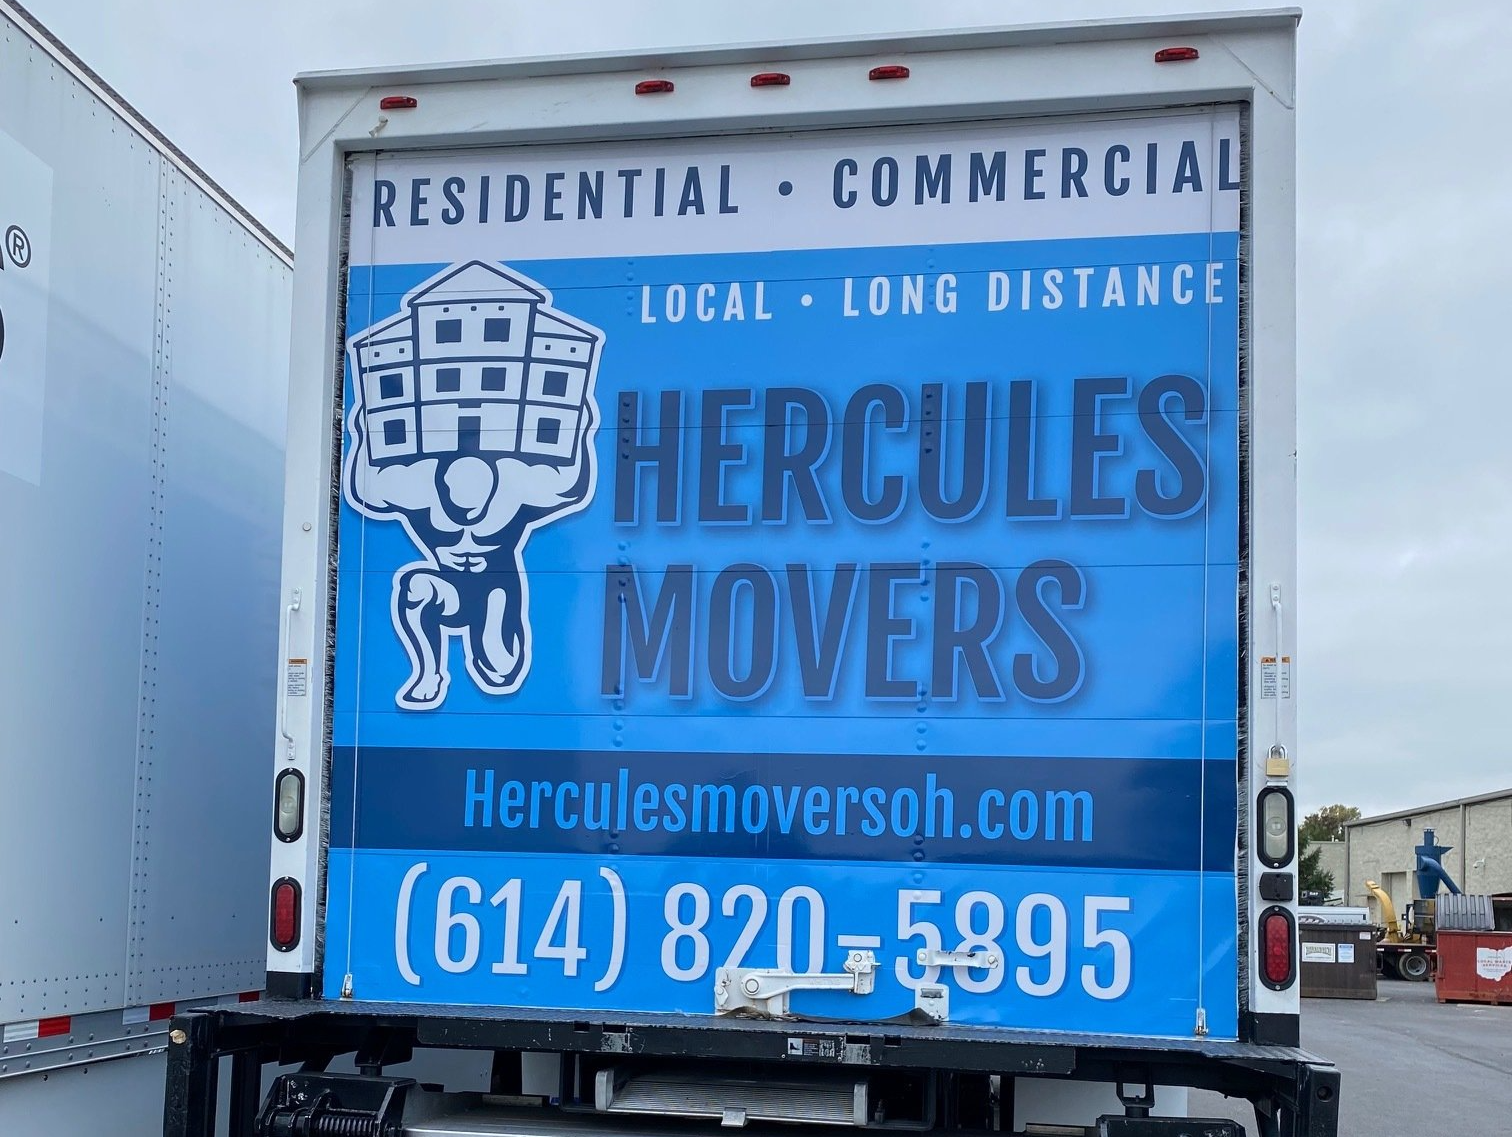 Hercules Movers Truck